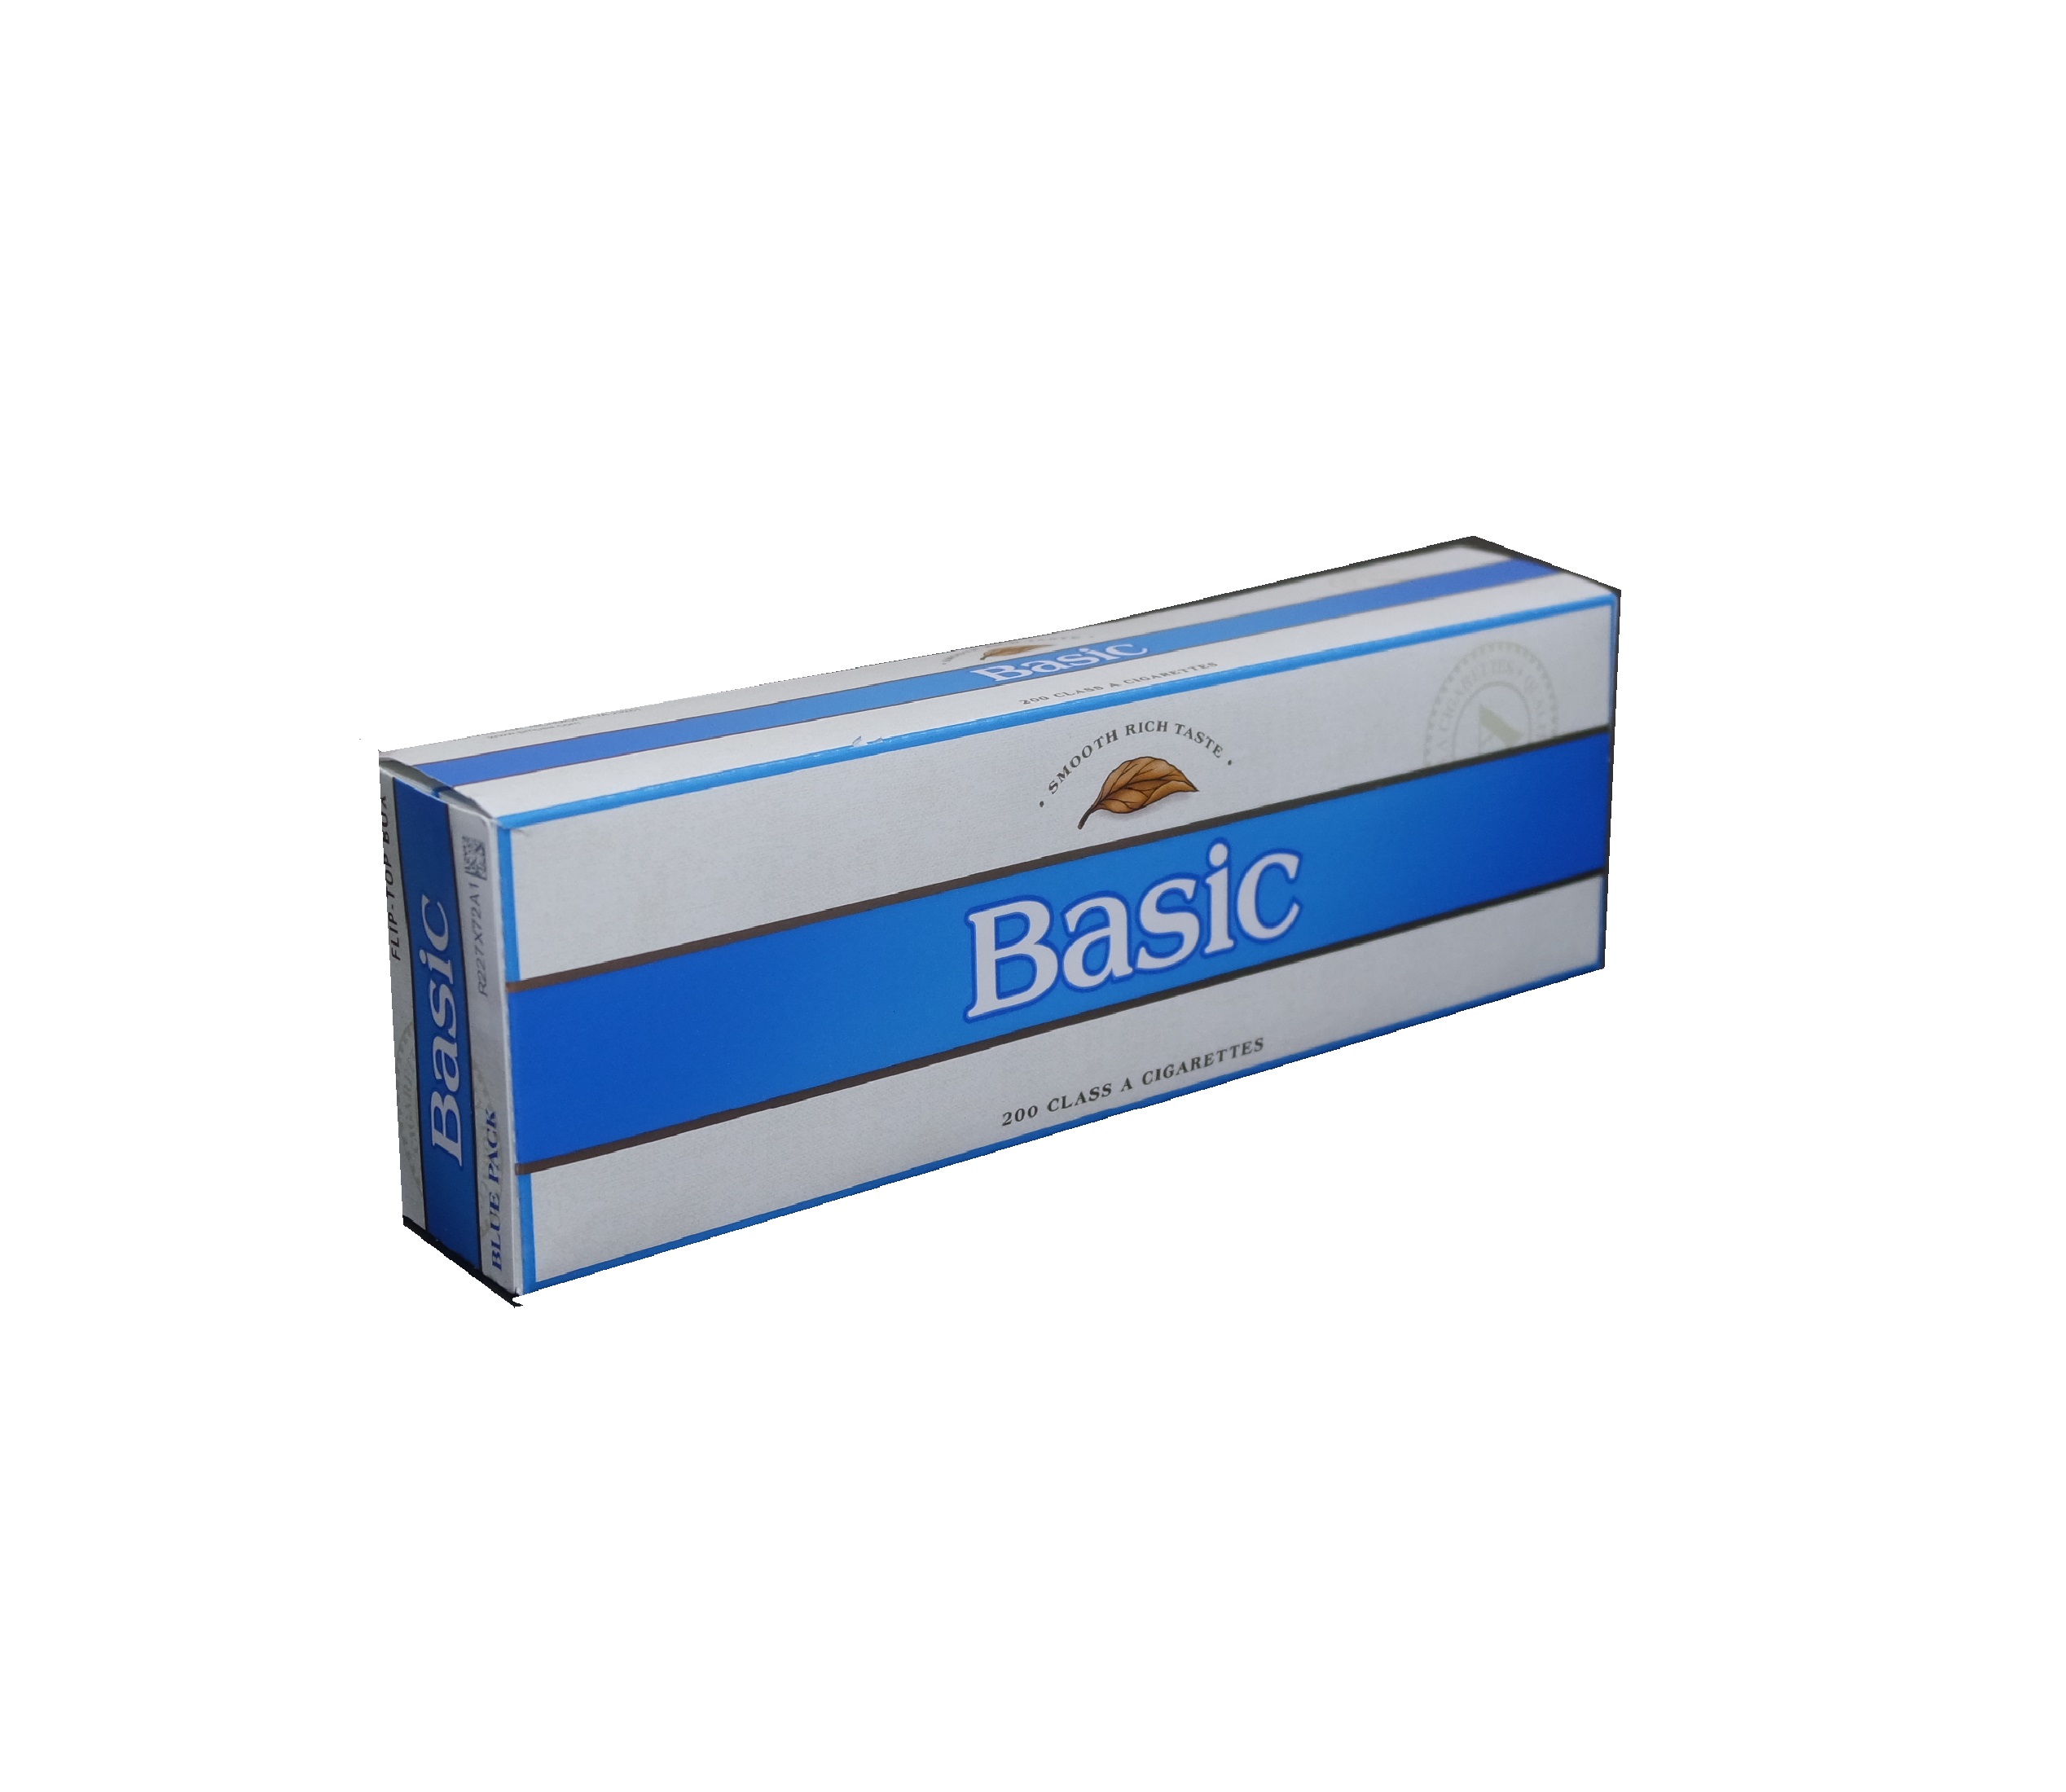 Basic blue box